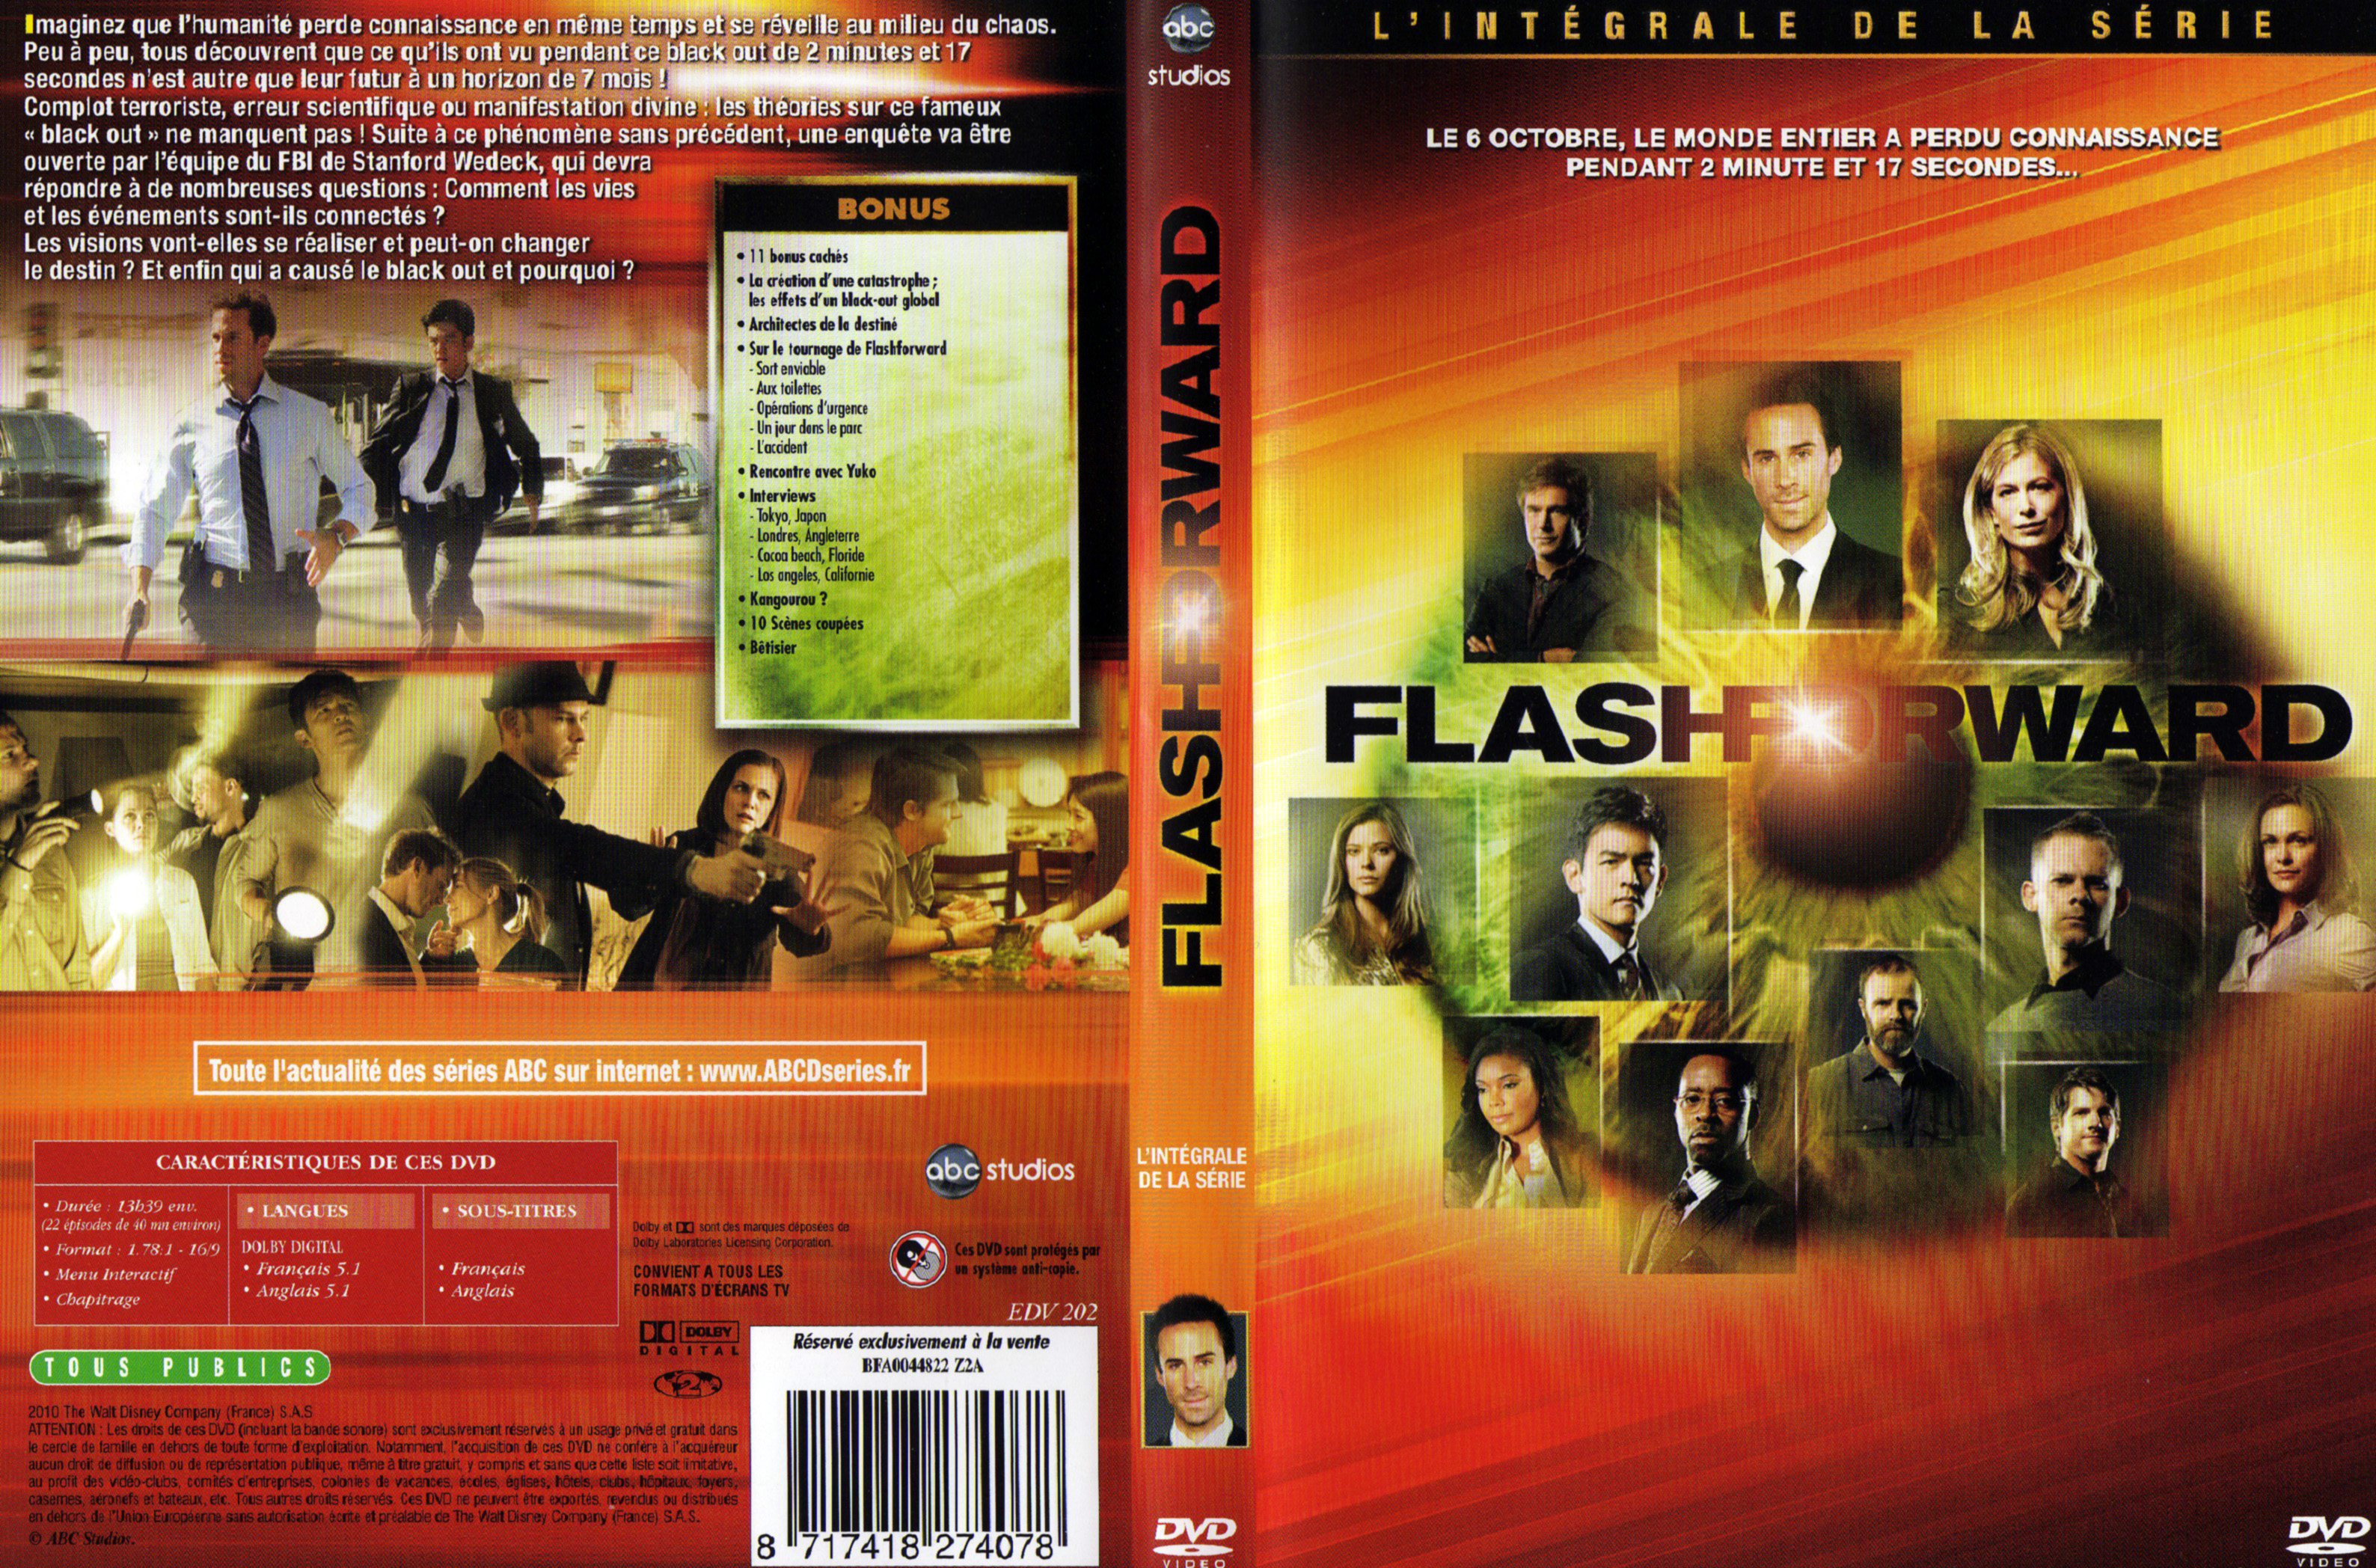 Jaquette DVD Flashforward Saison 1